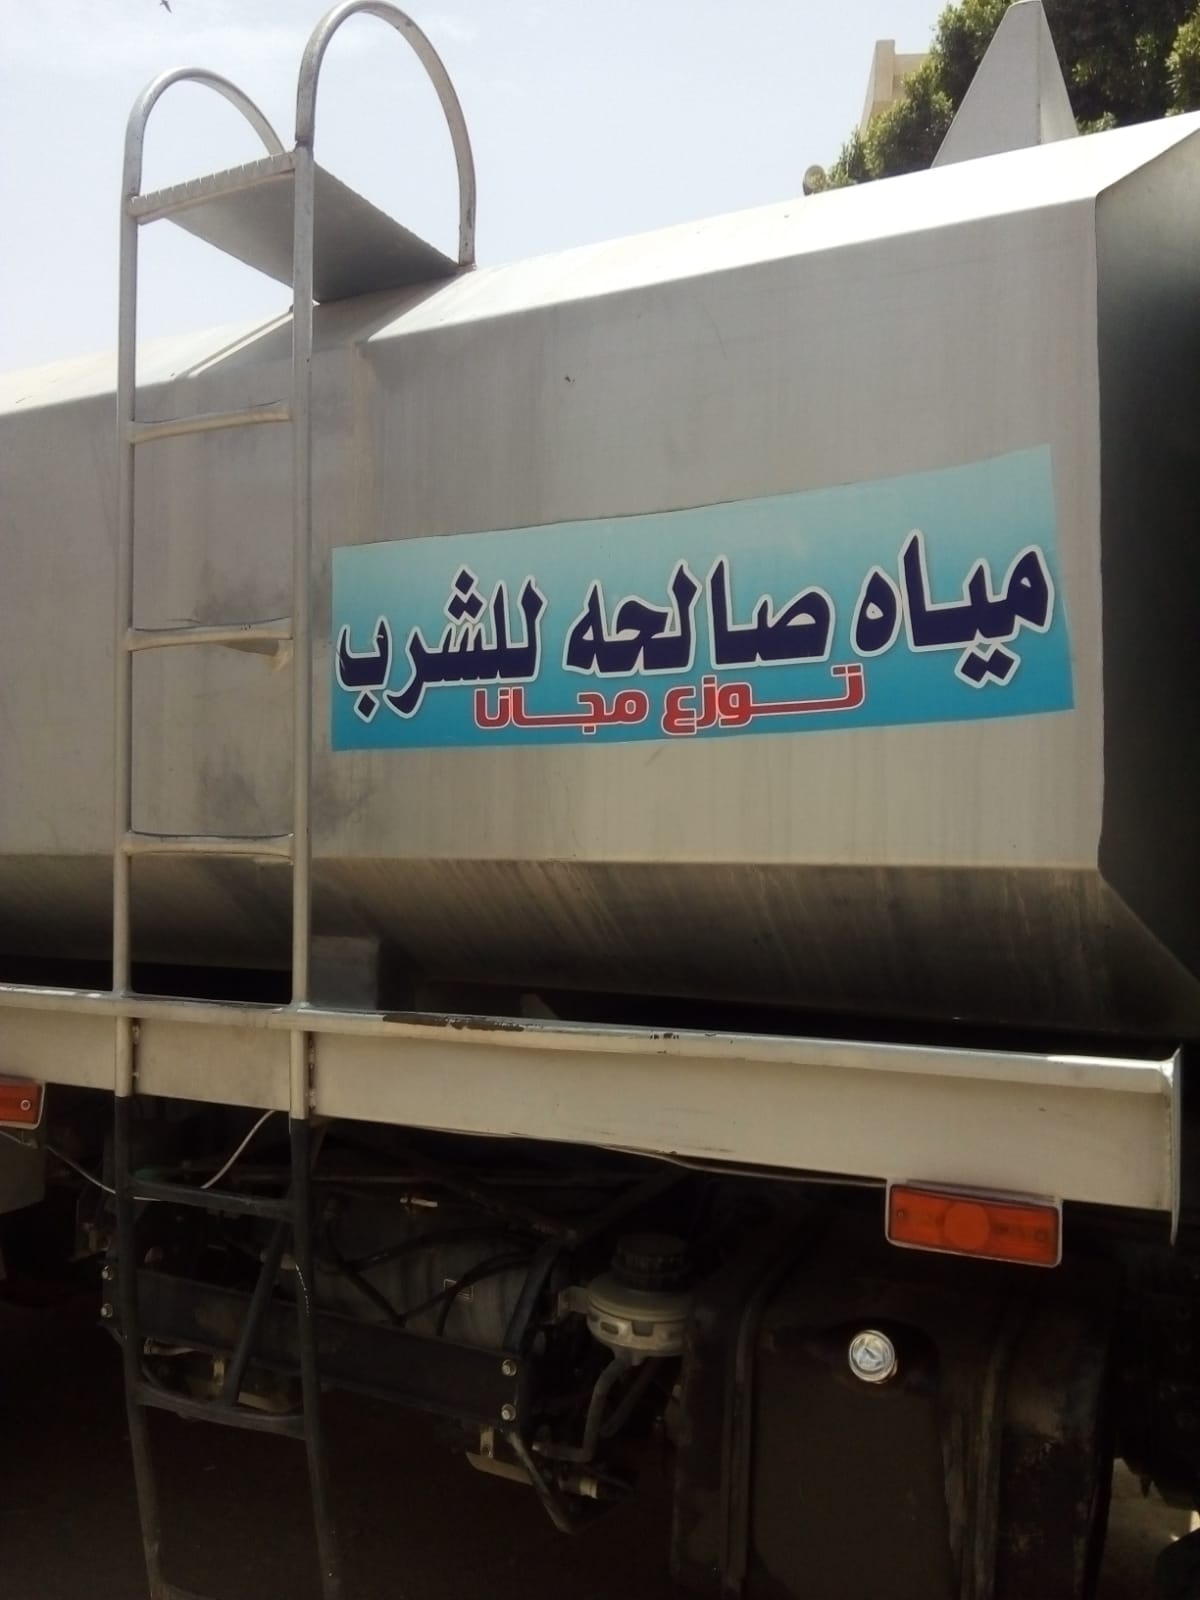 مدينة الزينية توفر سيارة مياه نقية لأهالى قرية المدامود بحرى  (3)